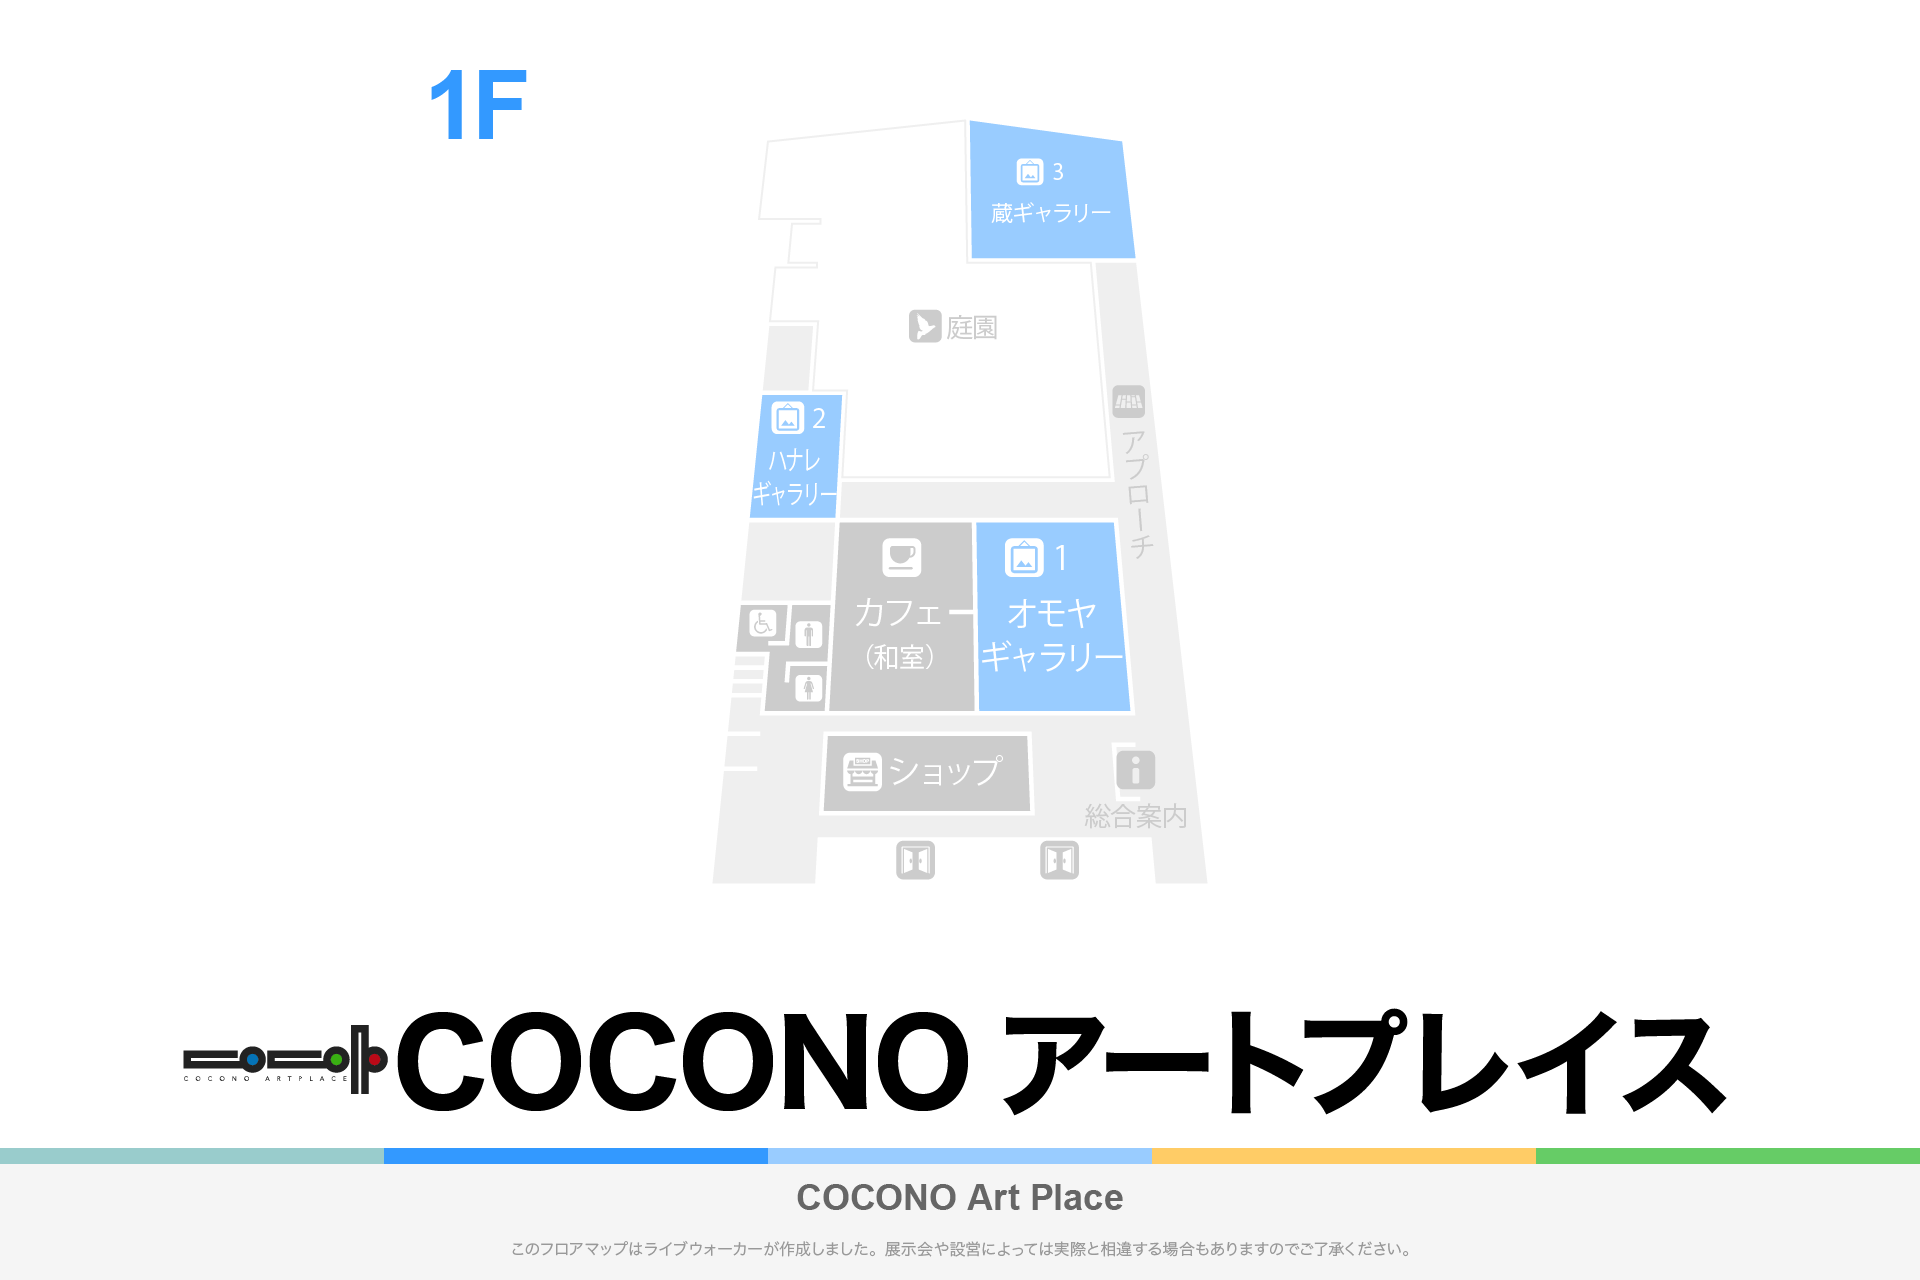 COCONO アートプレイスのフロアマップ